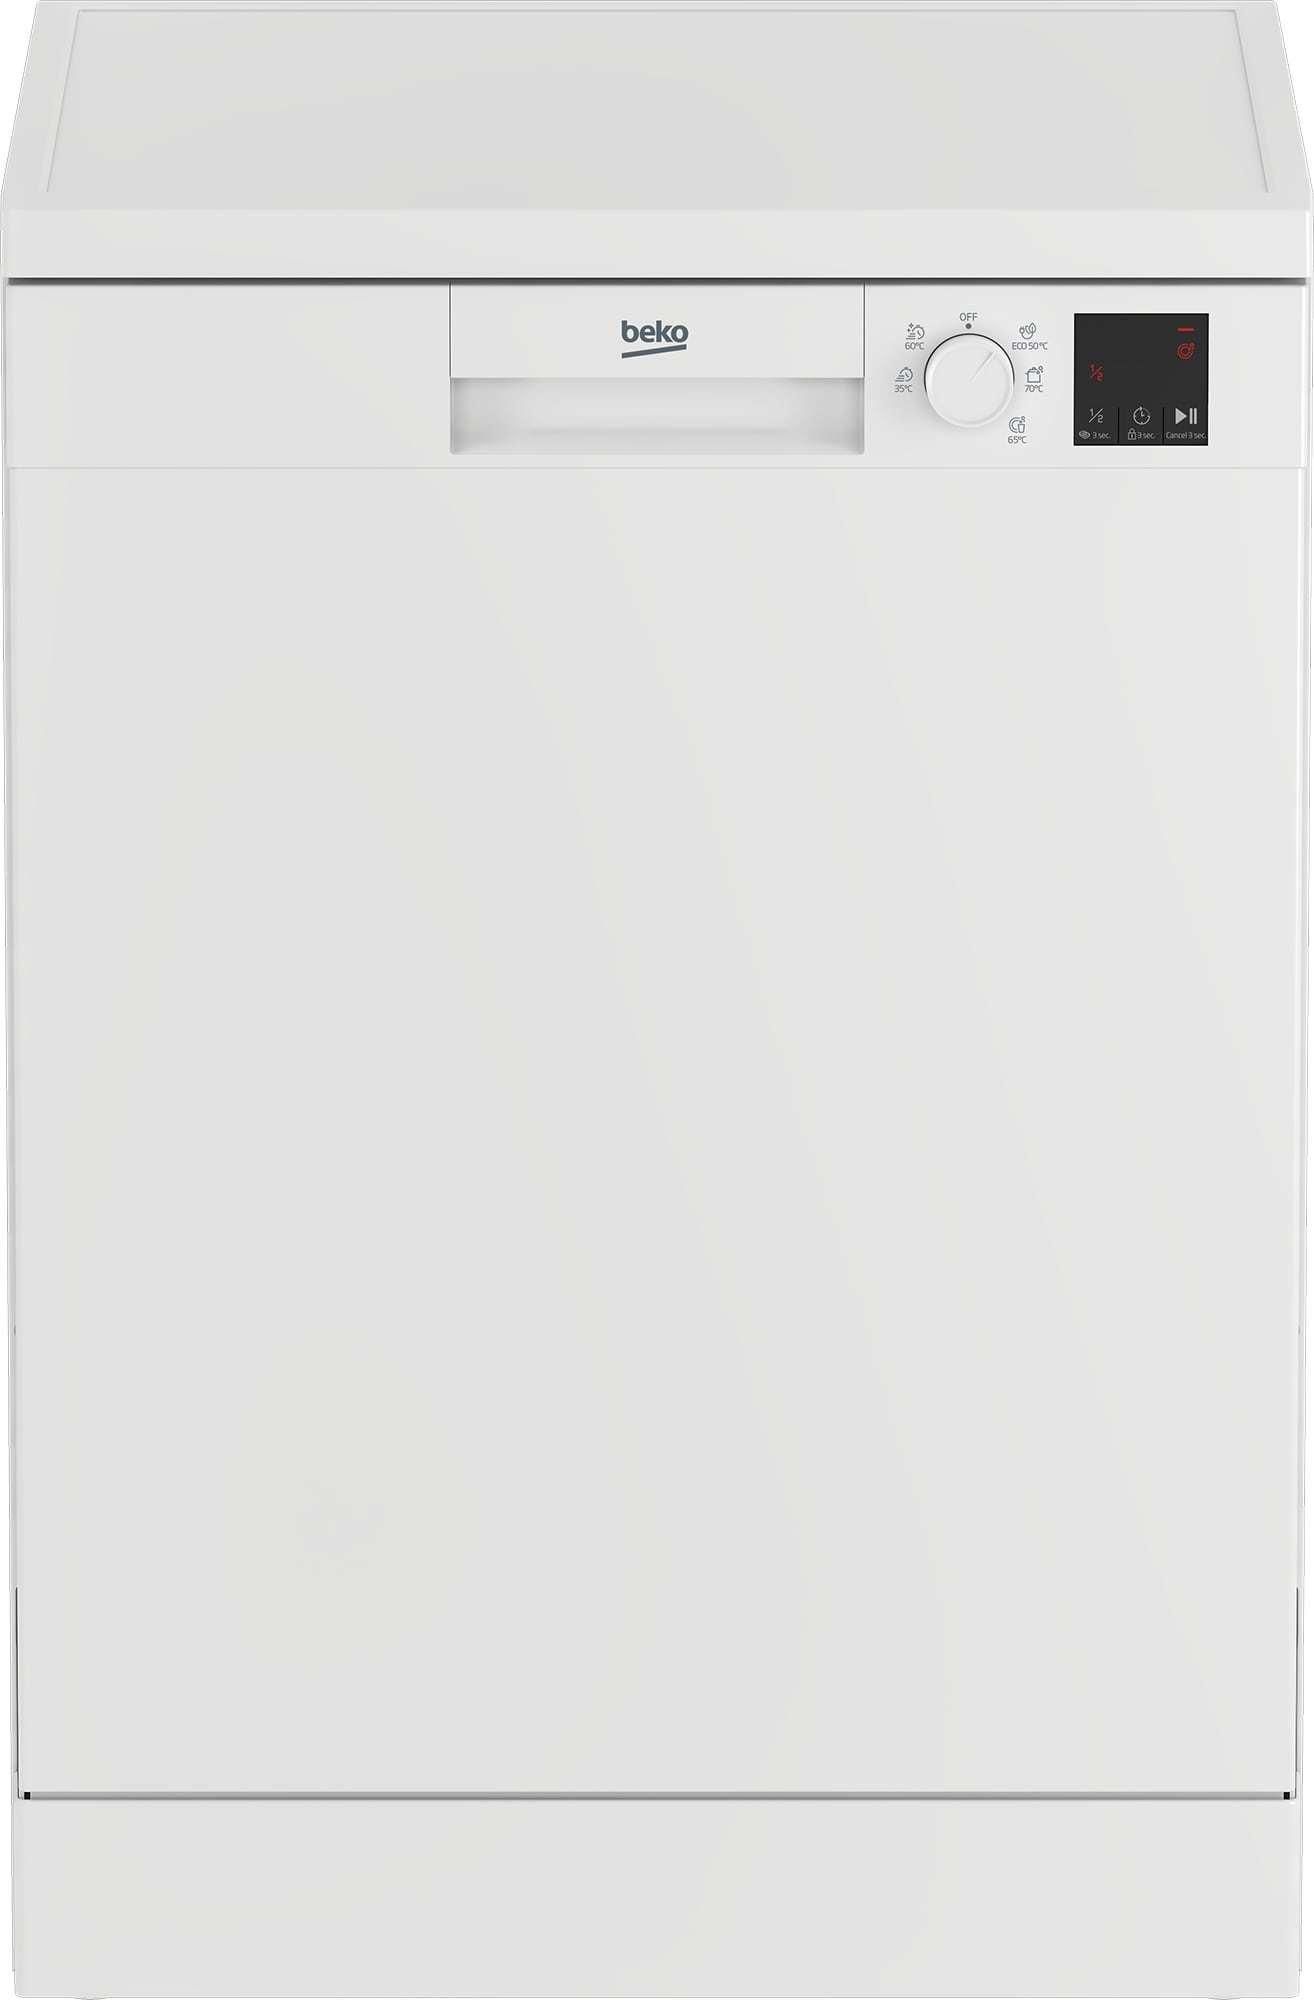 LAVASTOVIGLIE Beko elemento radiante e termostato Dish Piatto 540W 542W DL1043W DL1243APS 